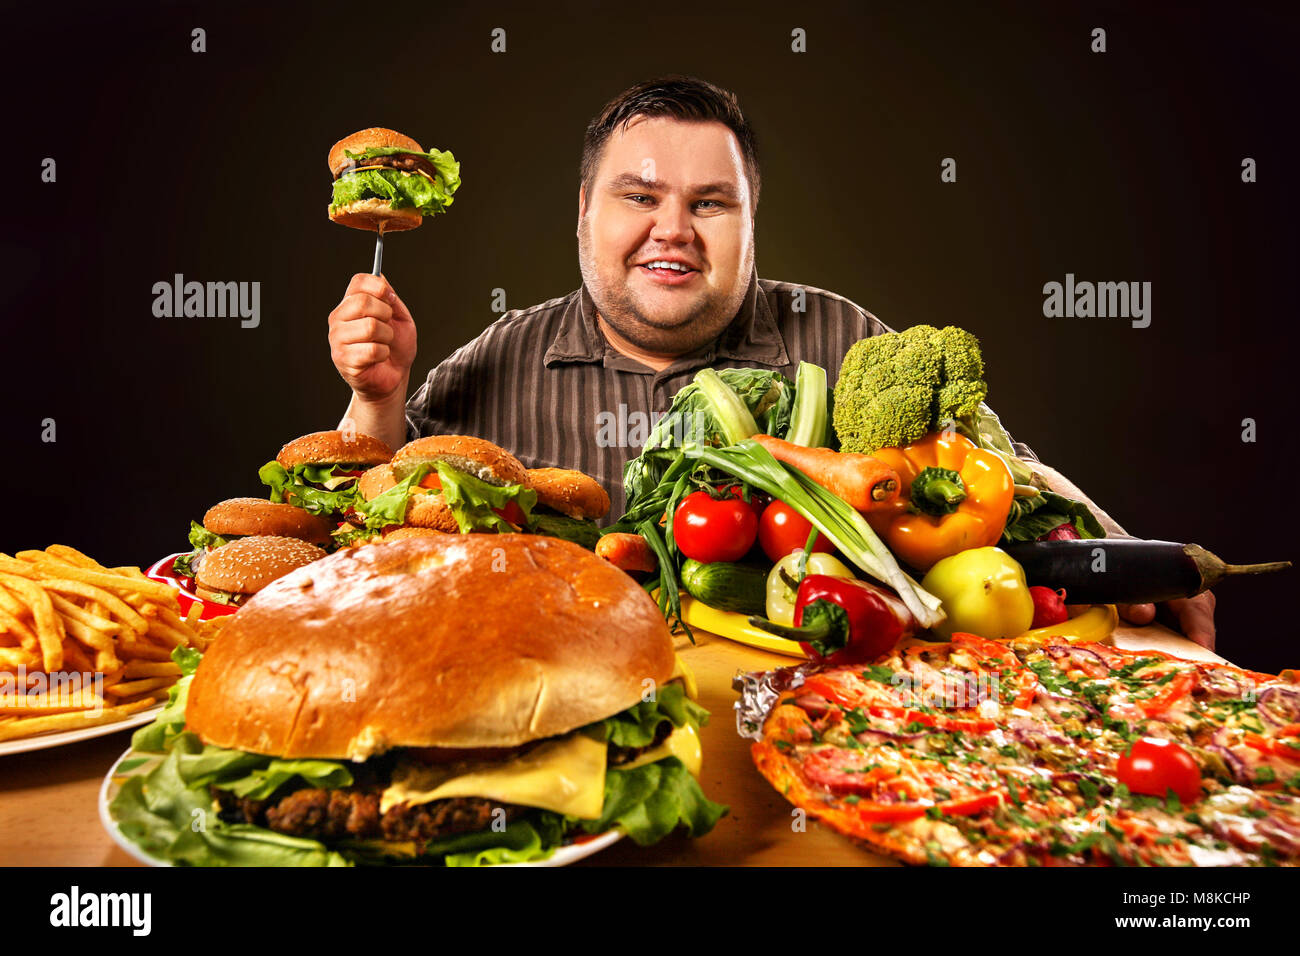 Слабость после жирной пищи. Сытный человек. Толстый человек с гамбургером. Человек с ожирением есть сасласт.